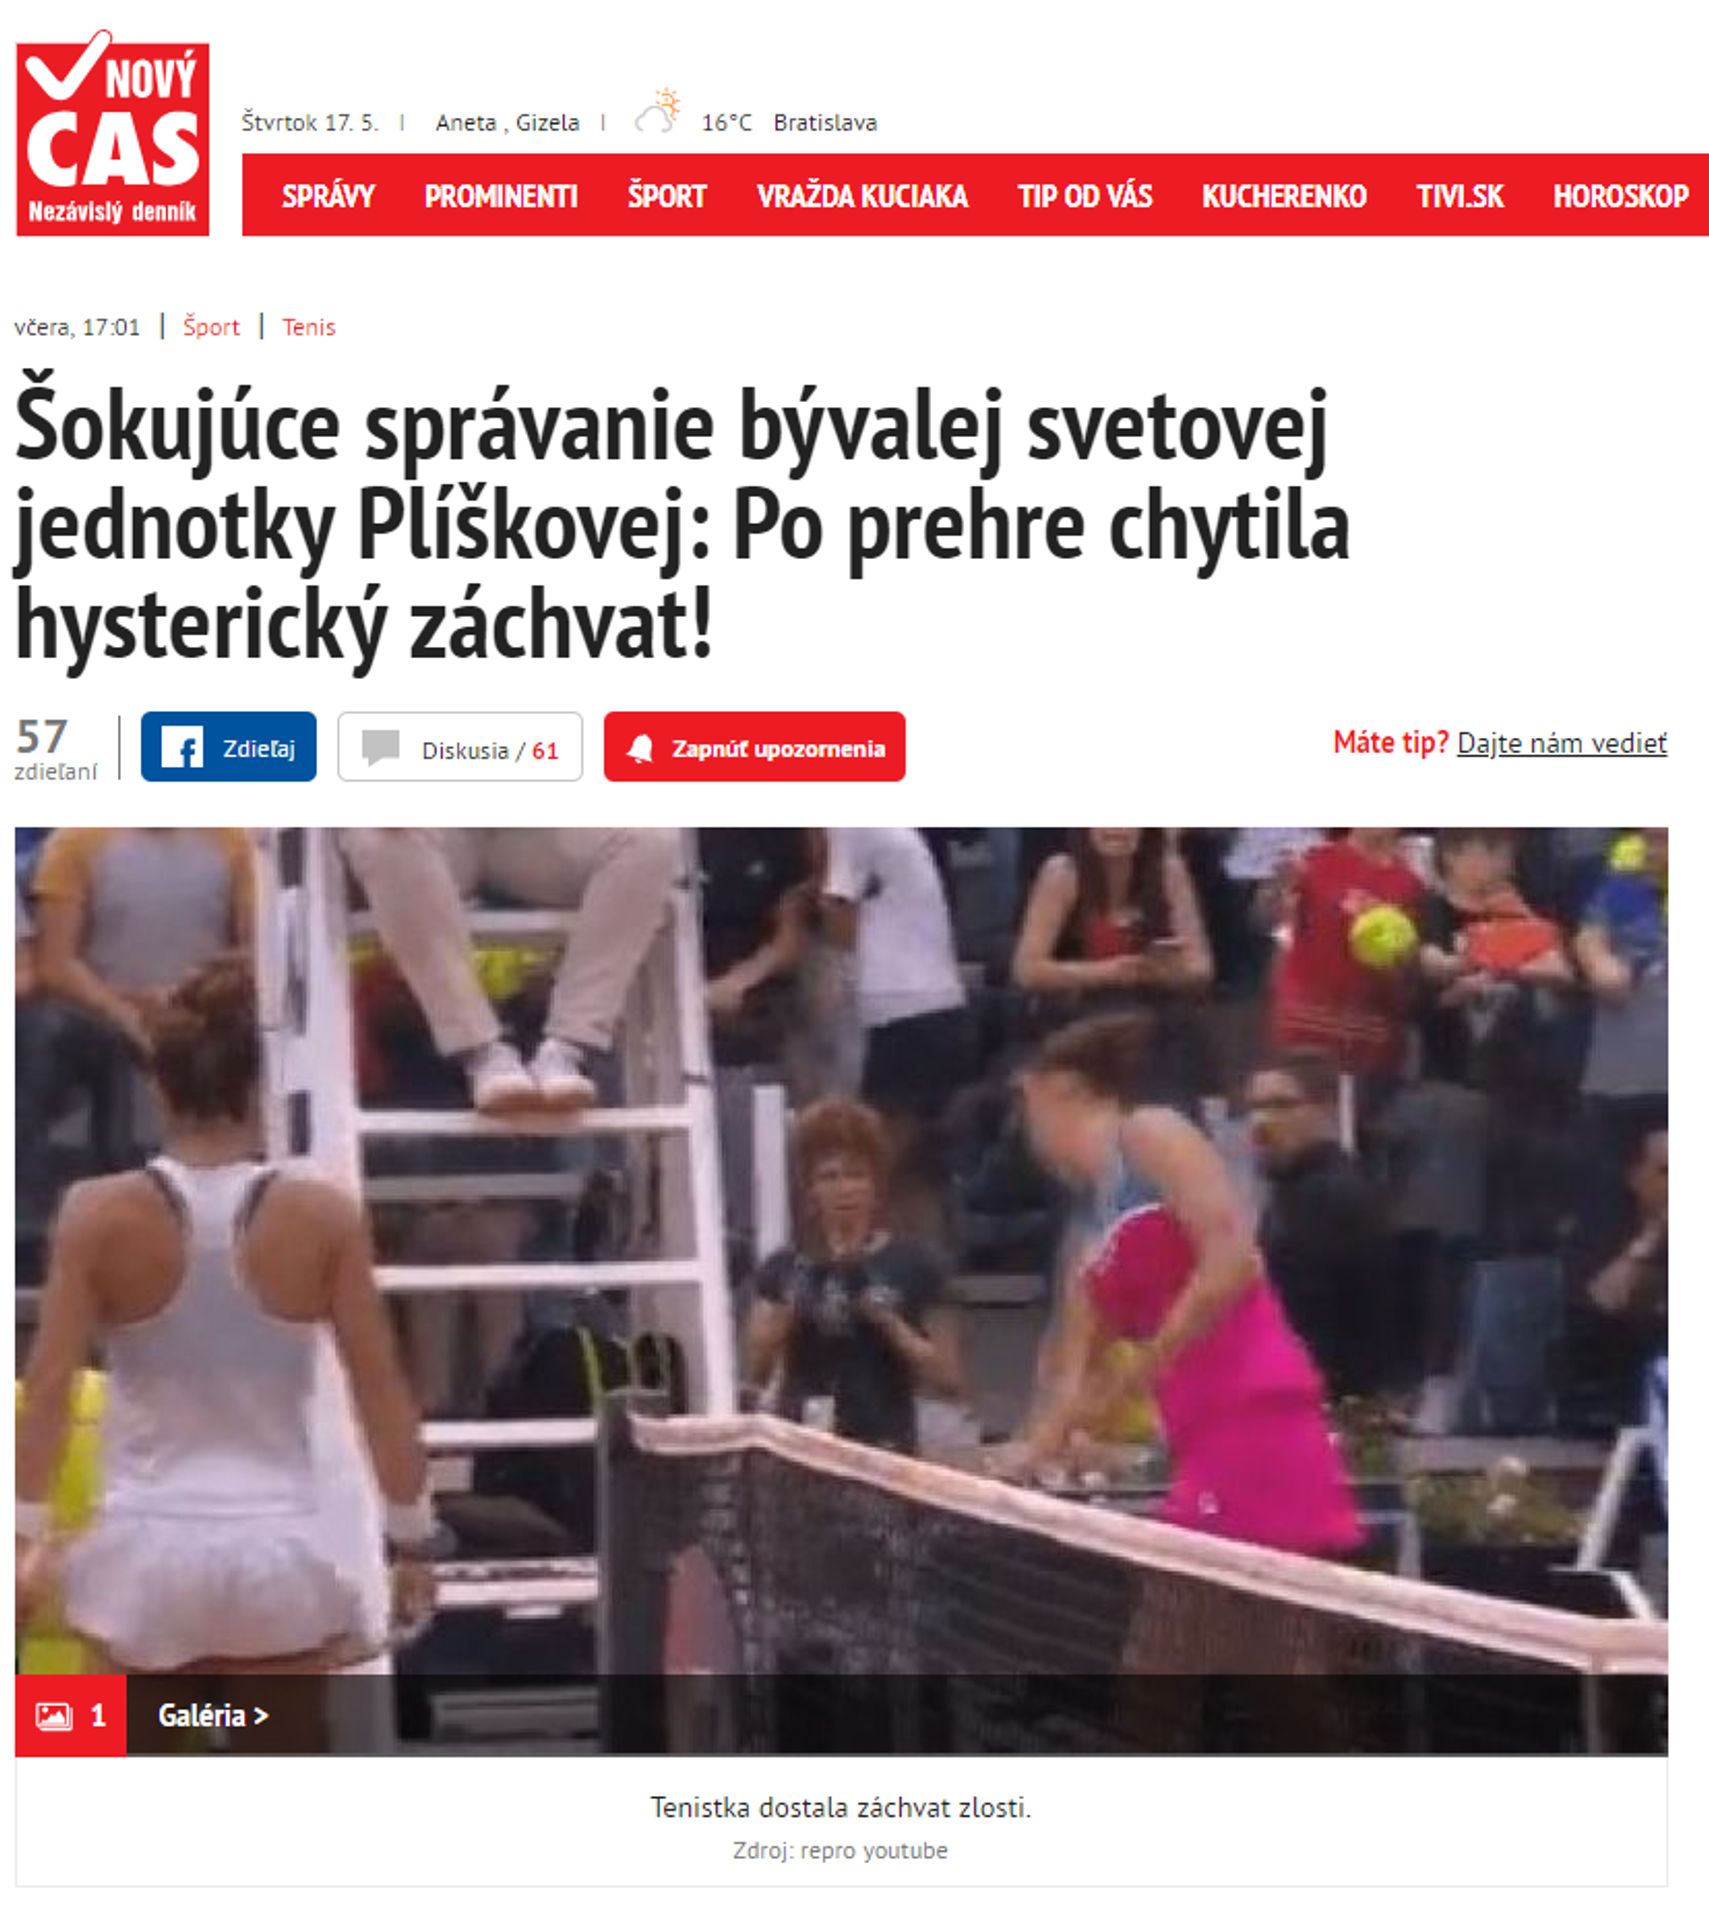 Slováci to nazvali hysterickým záchvatem - GALERIE: Zahraniční média píší o Karolíně Plíškové (2/6)